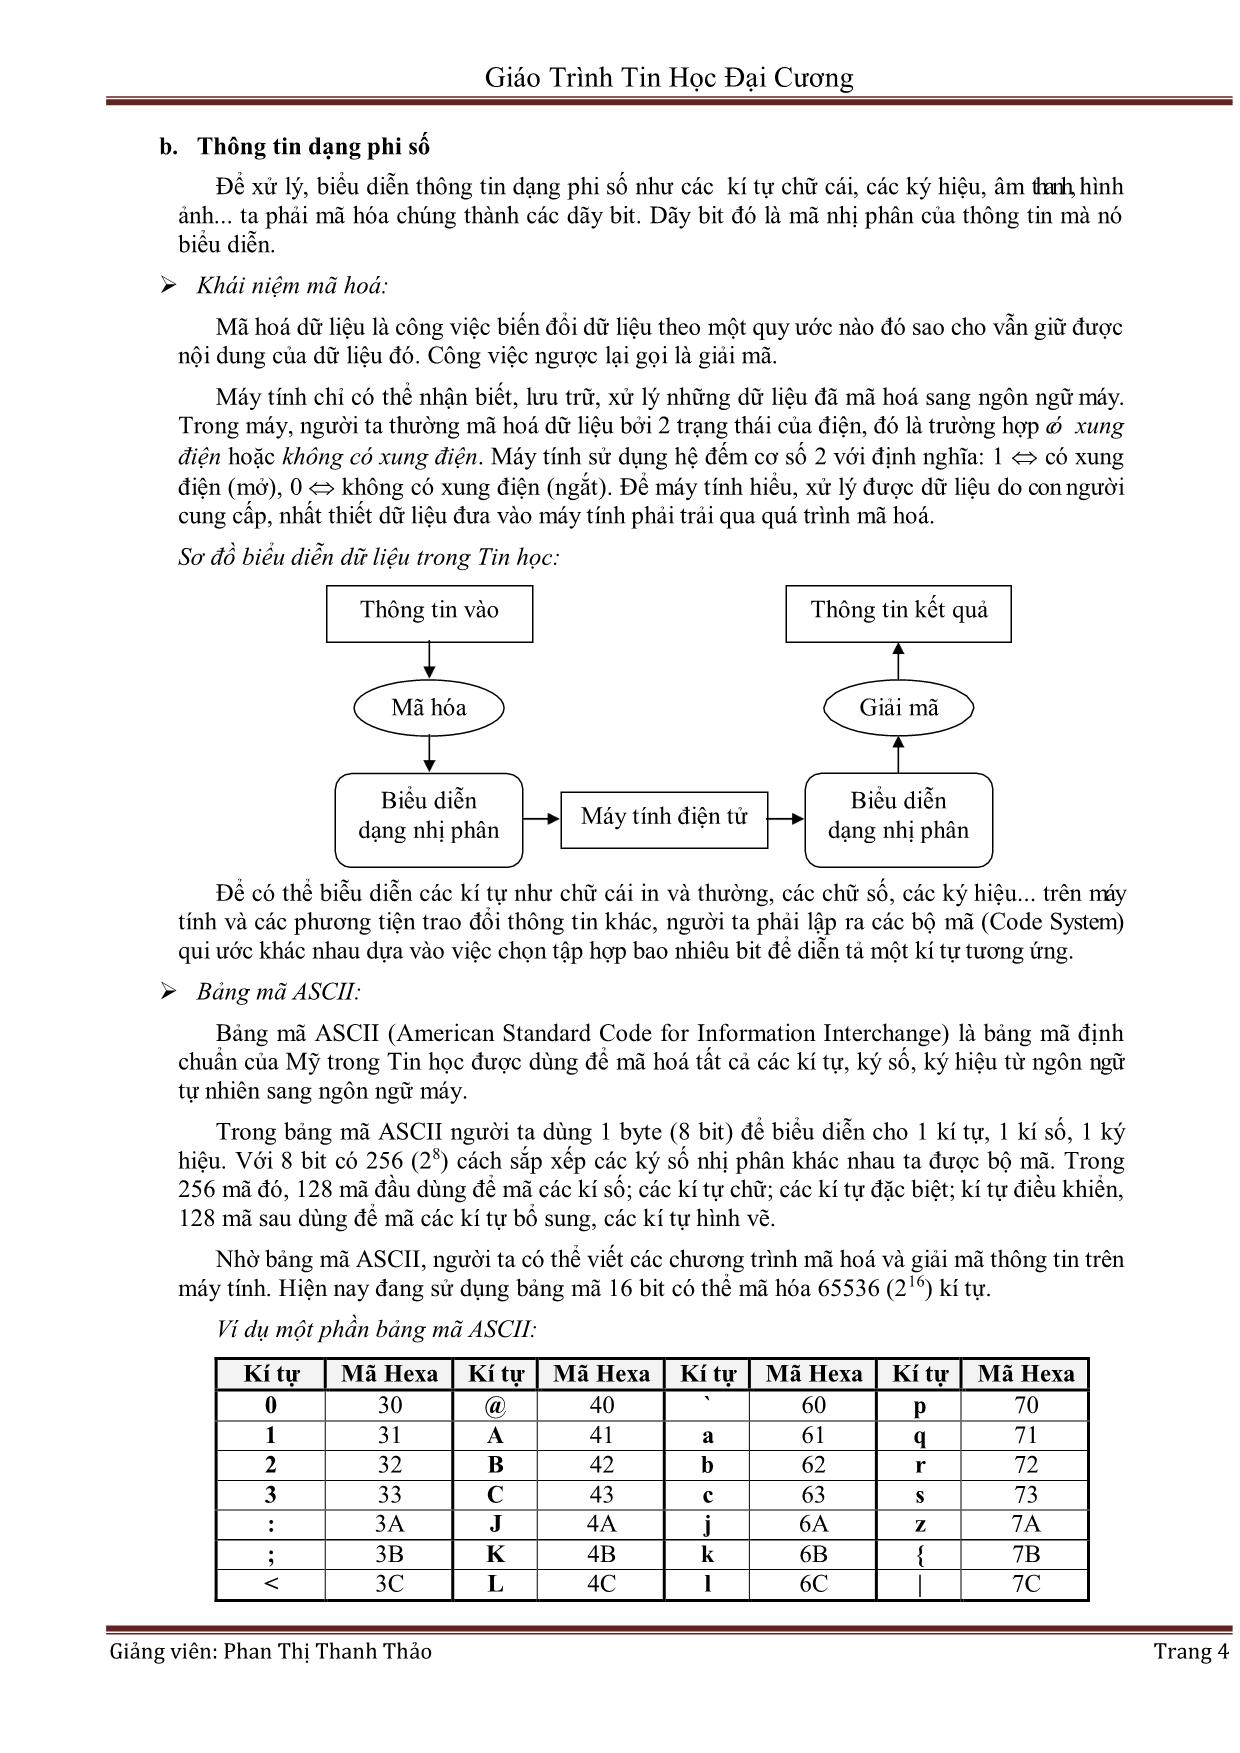 Giáo trình Tin học đại cương (Phần 1) - Phan Thị Thanh Thảo trang 4